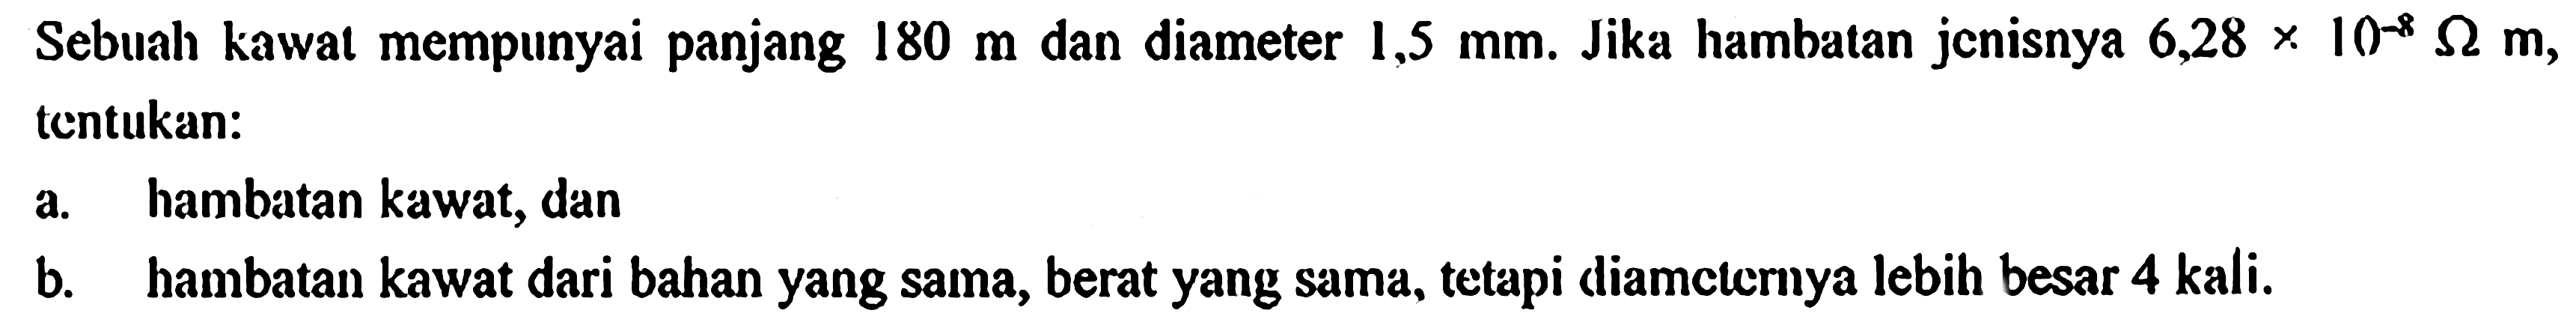 Sebuah kawat mempunyai panjang 180 m dan diameter 1,5 mm. Jika hambalan jenisnya 6,28 x 10^(-8) ohm m, tentukan: a. hambatan kawat, dan b. hambatan kawat dari bahan yang sama, berat yang sama, tetapi diameterrya lebih besar 4 kali.